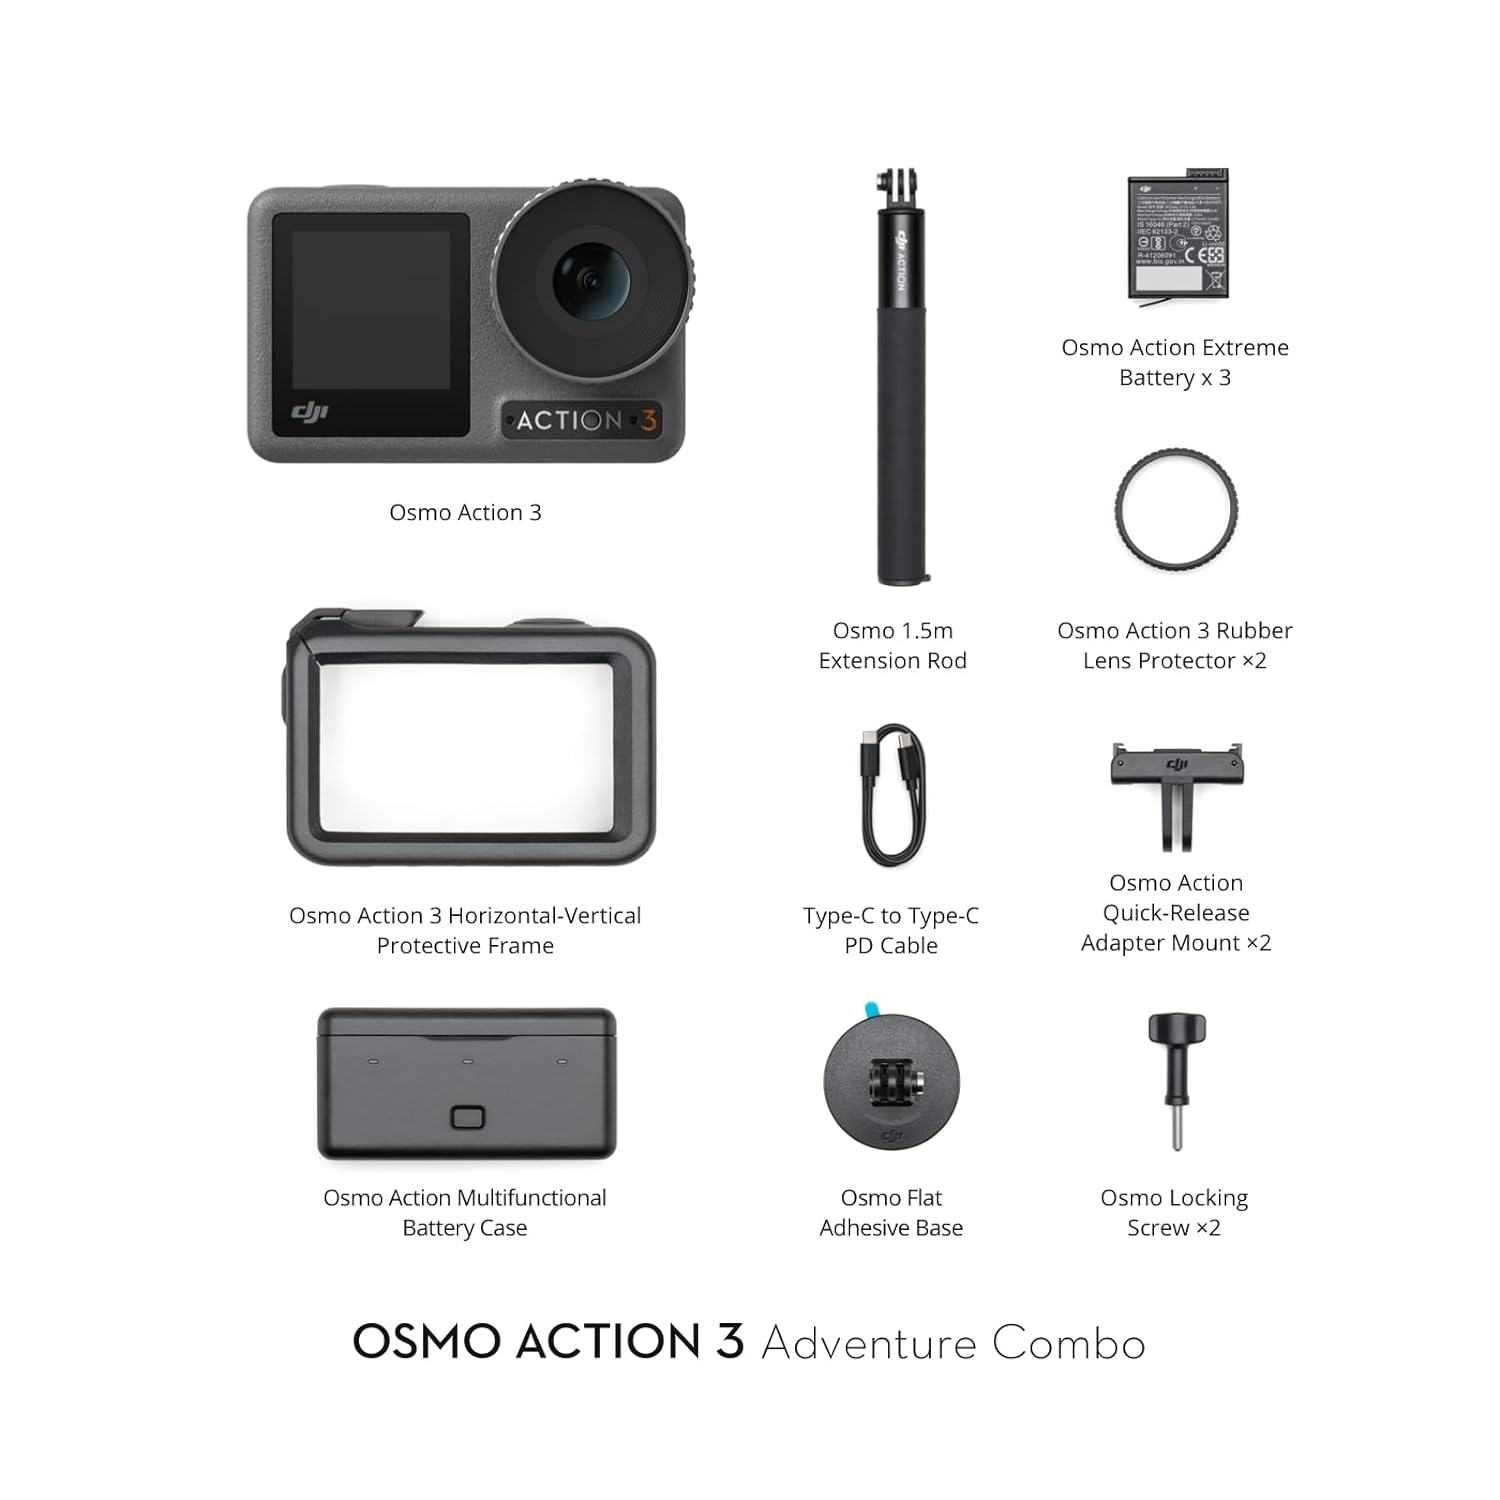 DJI Osmo Action 3 Optical Zoom 4X Adventure Combo, Black